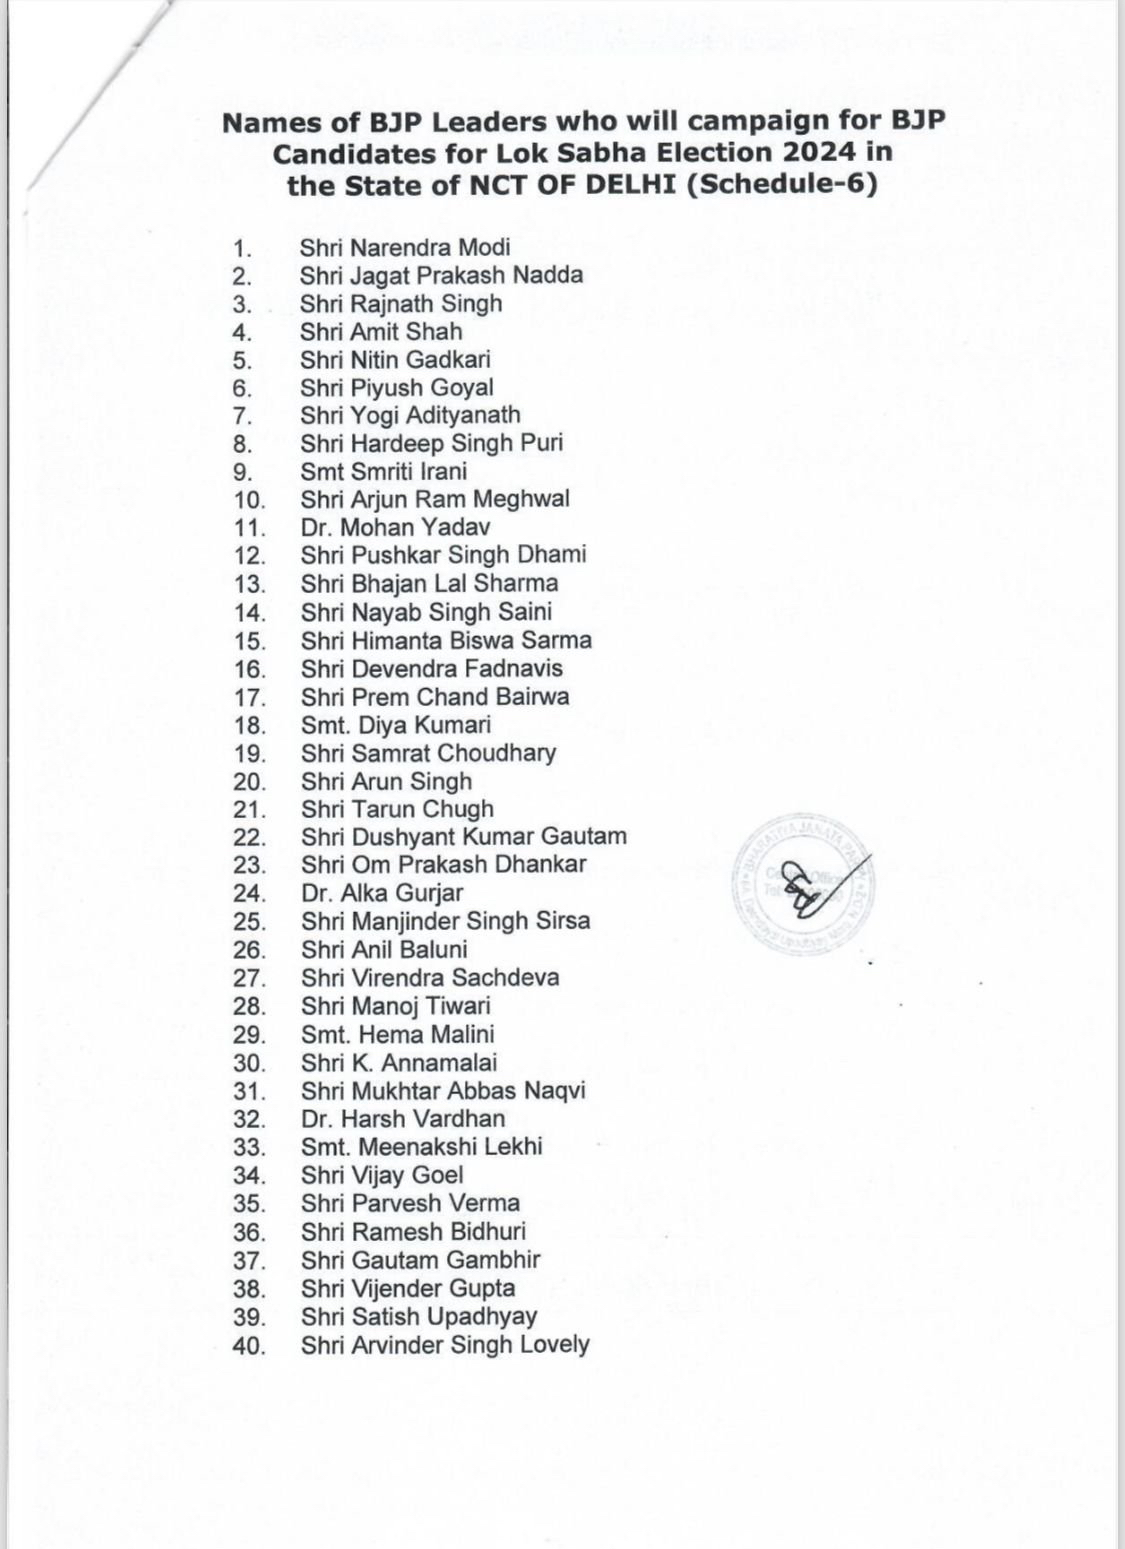 BREAKING : भाजपा की स्टार प्रचारकों की लिस्ट की जारी, पीएम मोदी, समेत कई बड़े नेता दिल्ली में करेंगे प्रचार, कांग्रेस से गए अरविंदर सिंह लवली का भी लिस्ट में 